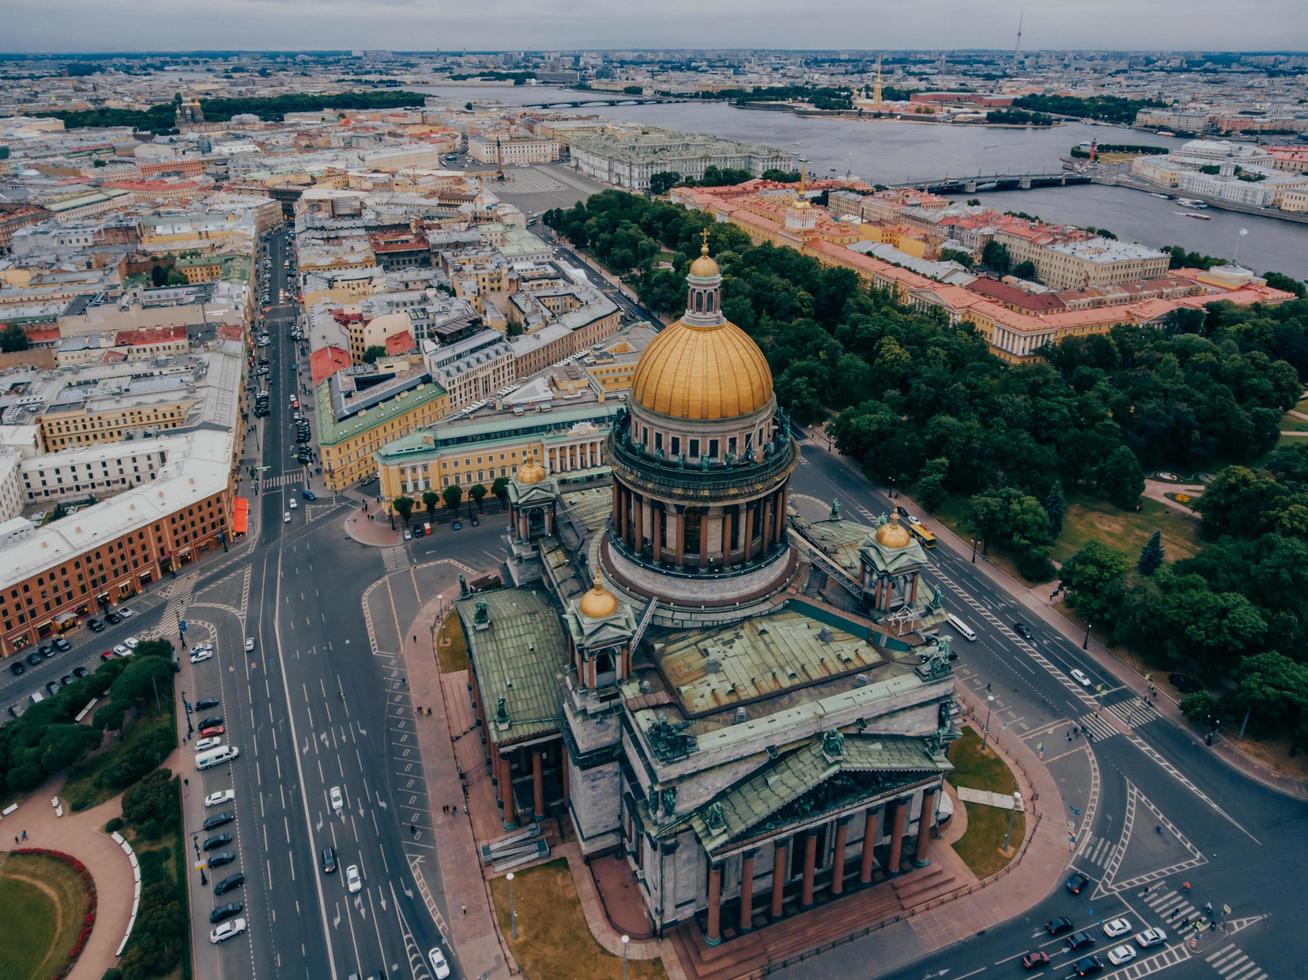 berömda katedralen i st petersburg på isaac square. flygperspektiv. sevärdheter för turister. ryska monument och platser av intresse foto